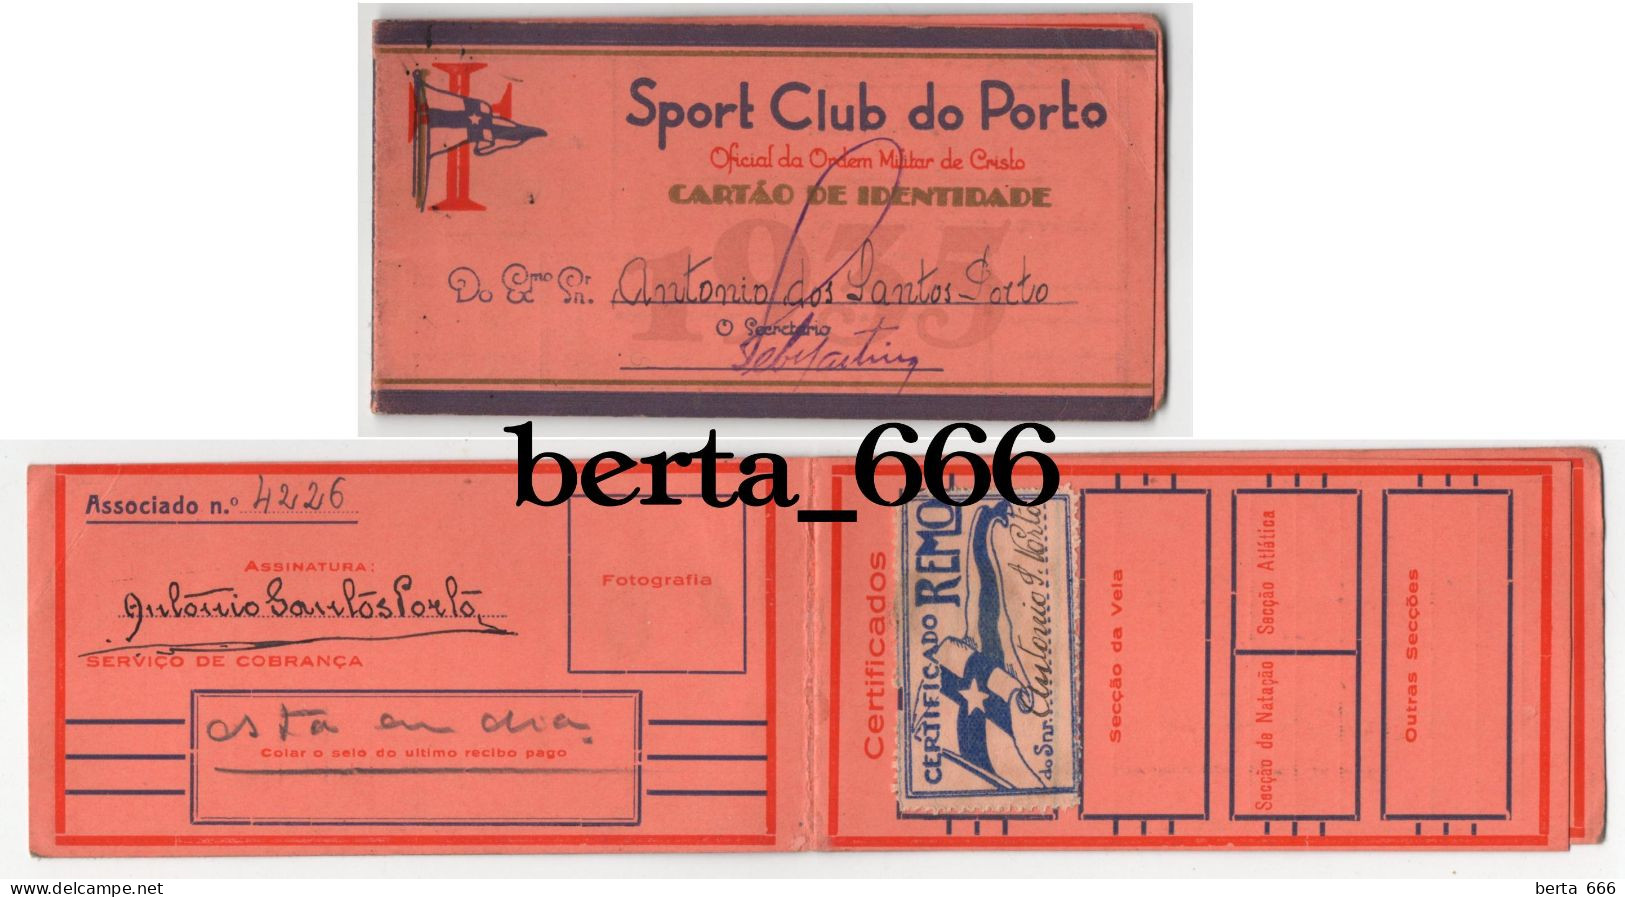 Sport Club Do Porto * Oficial Da Ordem Militar De Cristo * Cartão De Identidade De Sócio * Remo - Mitgliedskarten